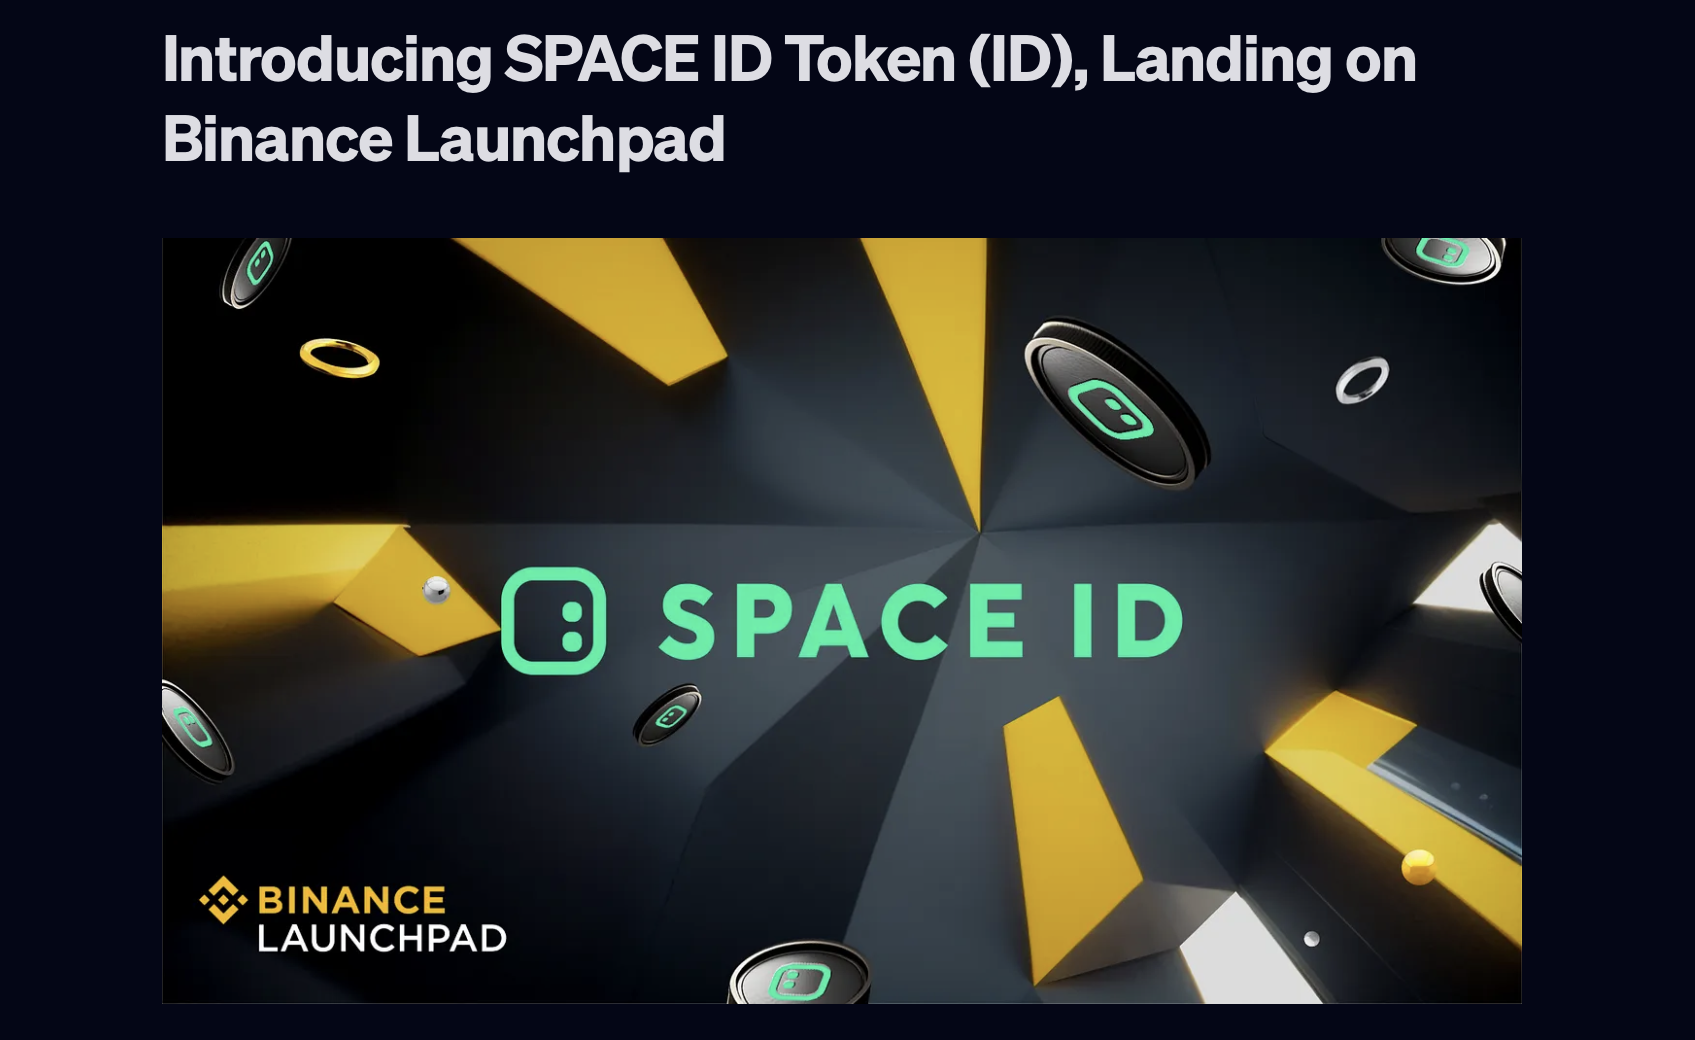 SPACE ID Binance Launchpad